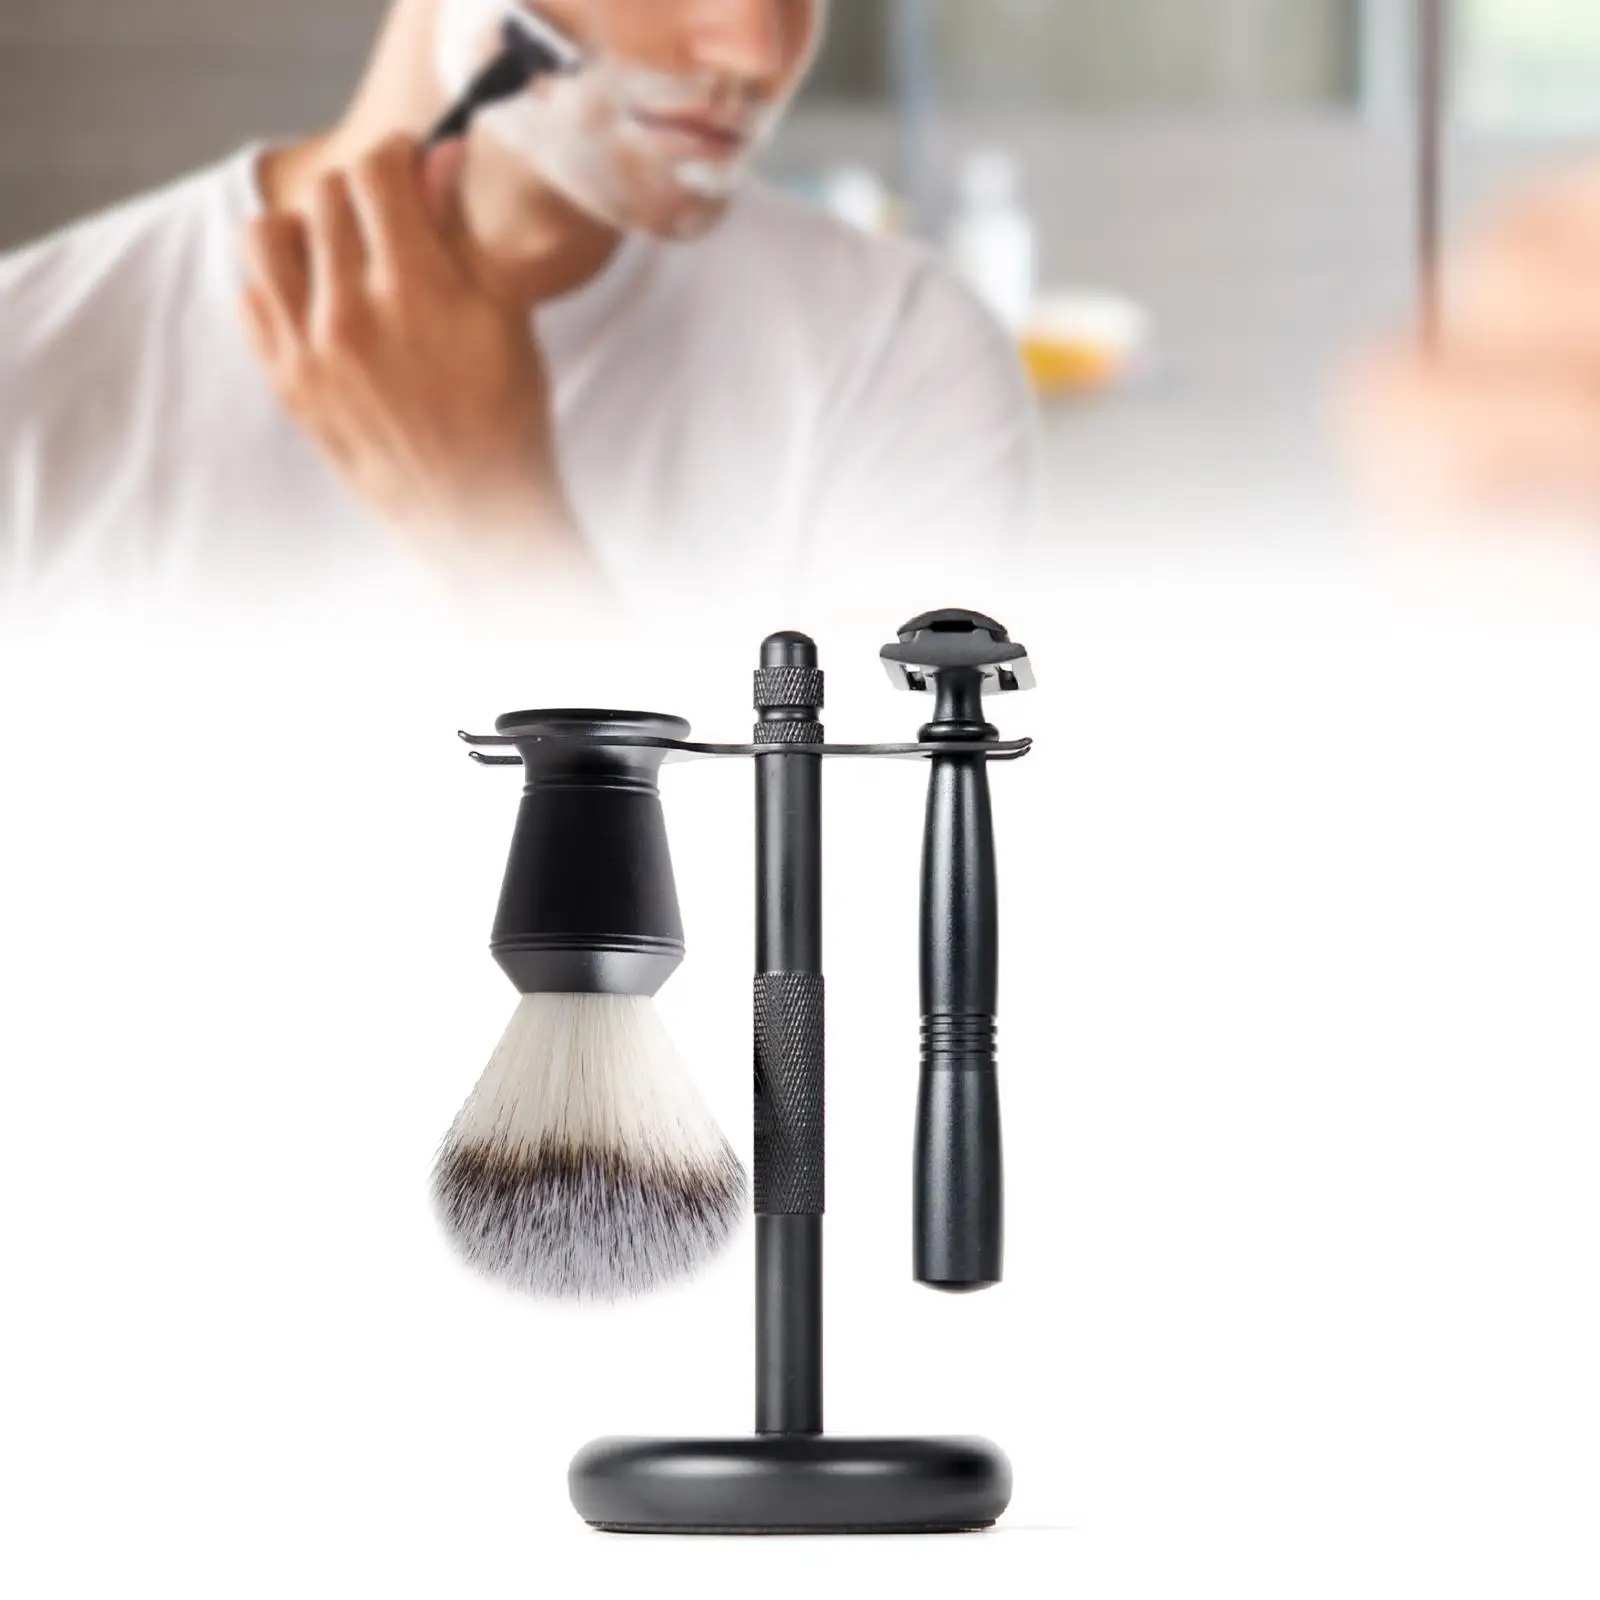 3x Shaving Kit for Men Black Shaving Stand Shaving Cleaning Tool Includes Edge Razor, Holder, Shaving Brush Shave Accessory